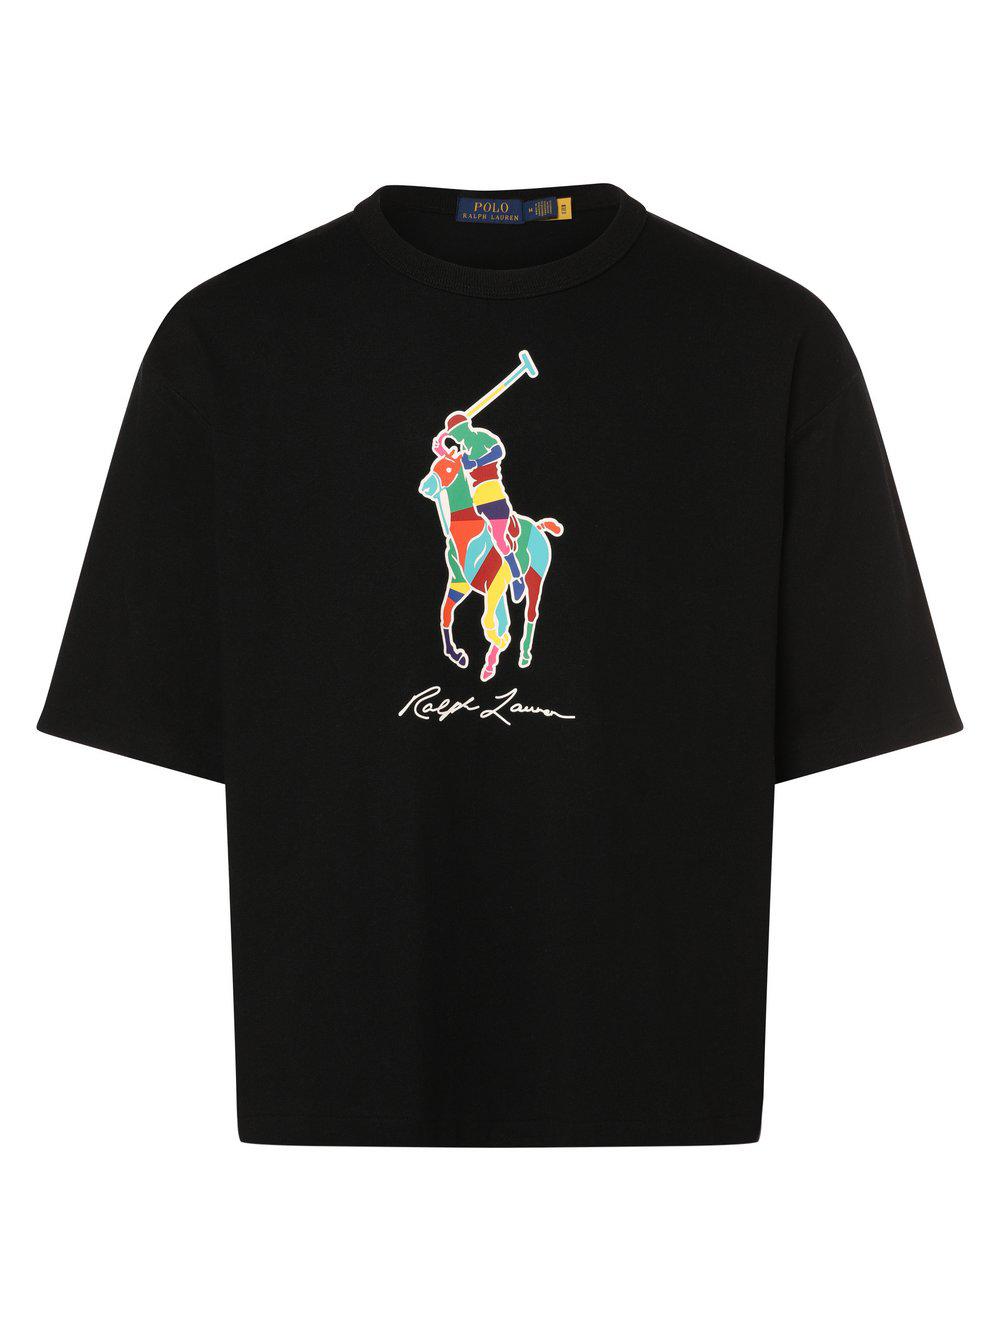 Polo Ralph Lauren T-Shirt Herren Baumwolle Rundhals bedruckt, schwarz von Polo Ralph Lauren